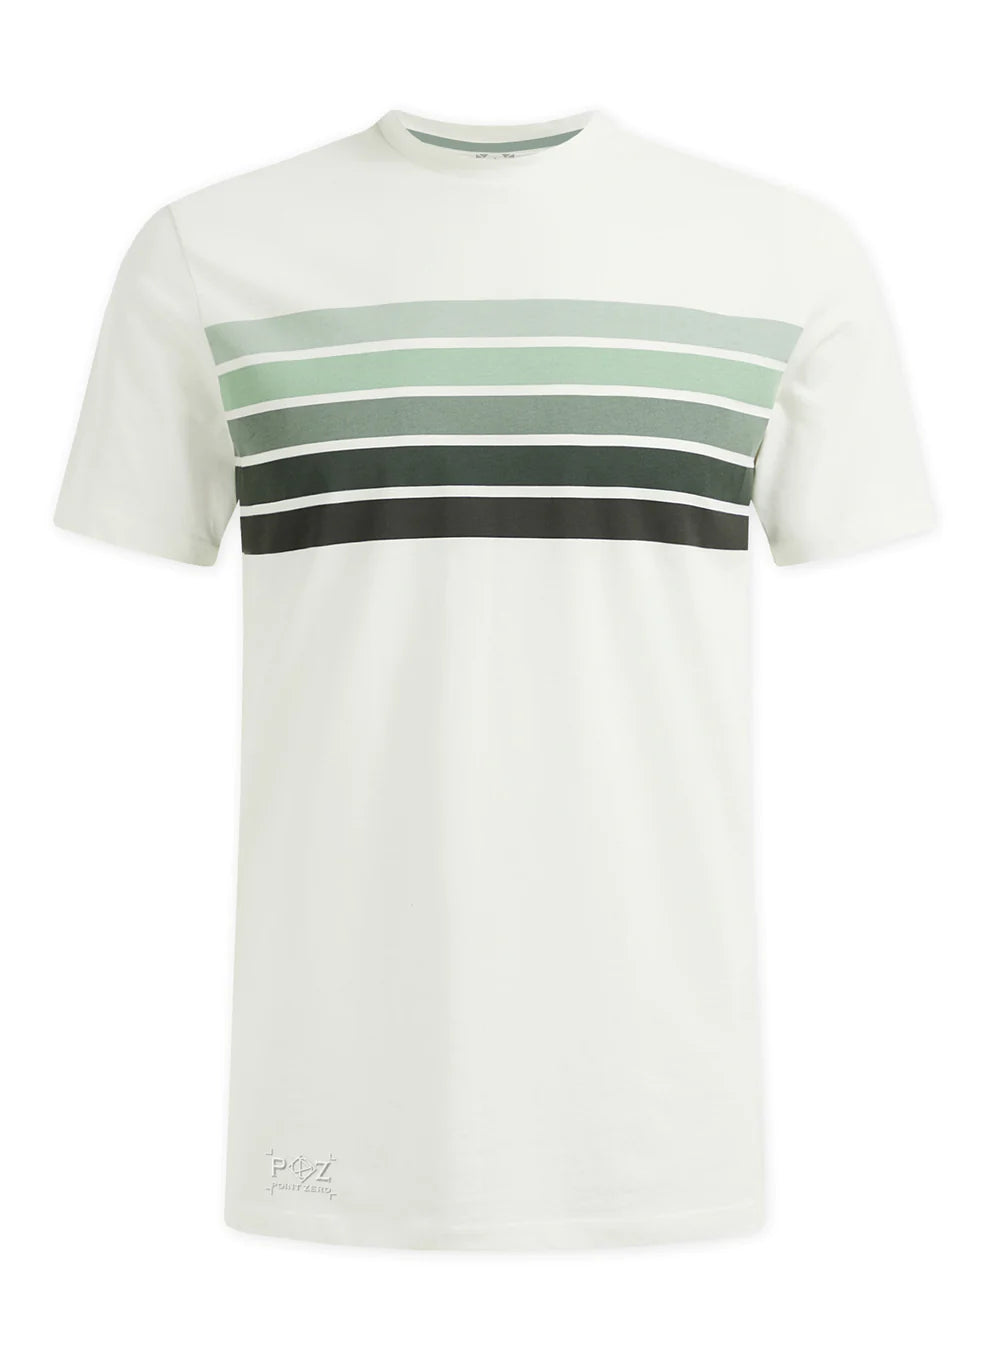 TARY Semi fit stripes print t-shirt - Mint